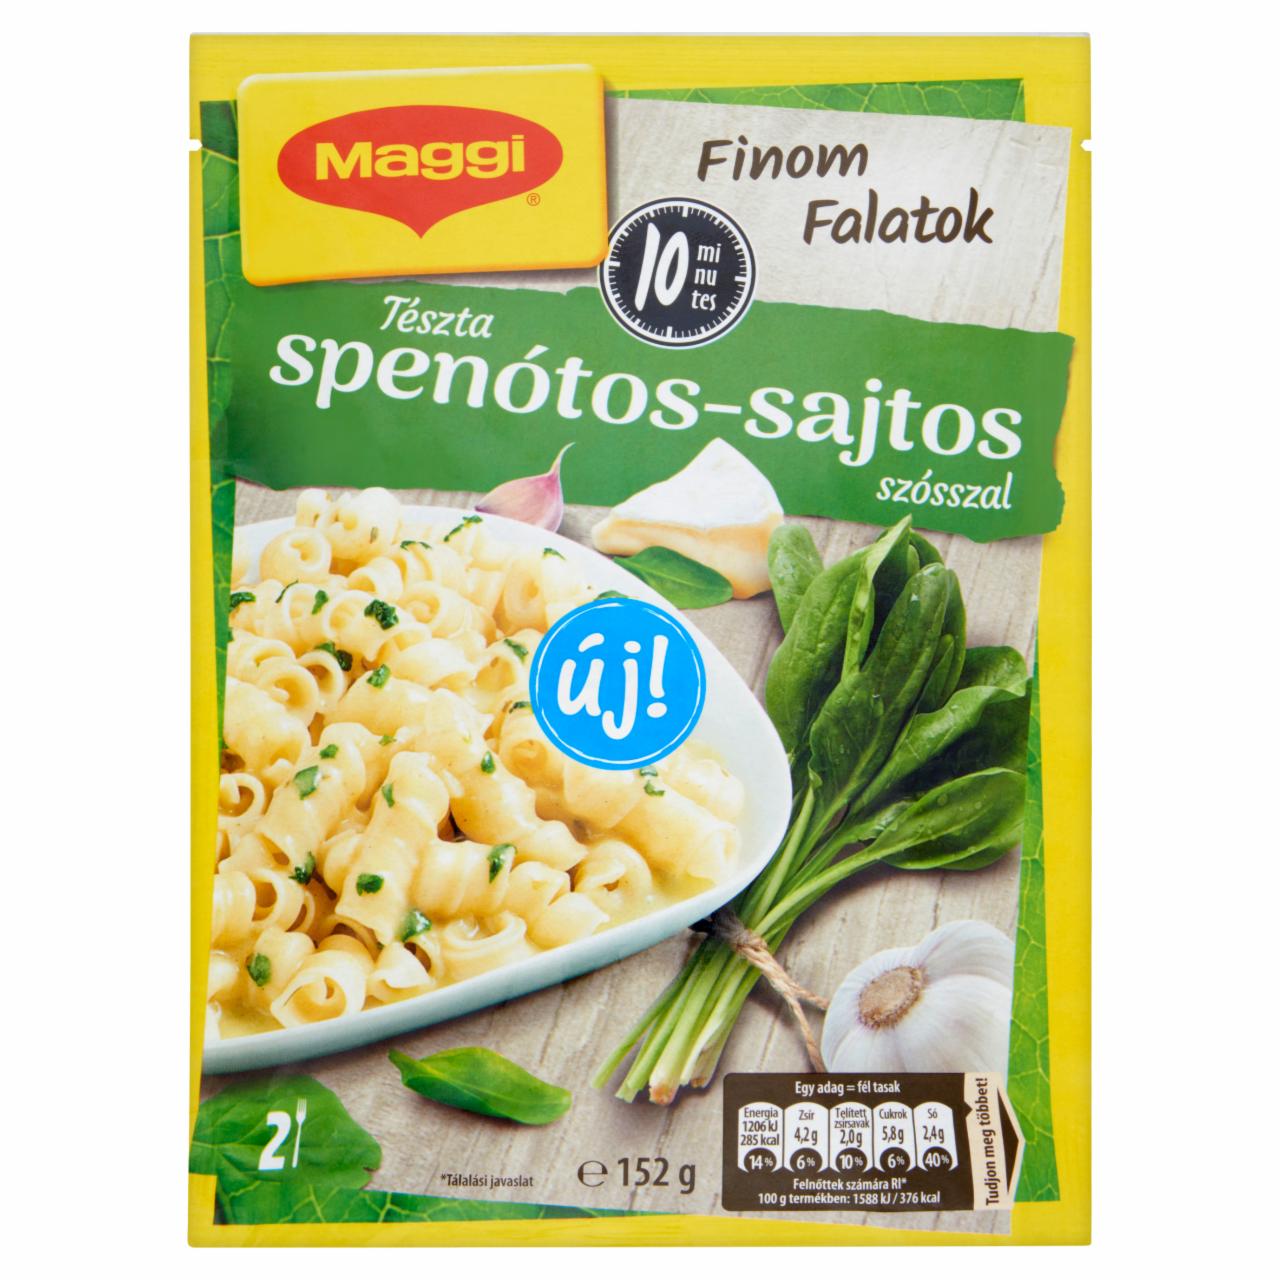 Képek - Maggi Finom Falatok tészta spenótos-sajtos szósszal 152 g